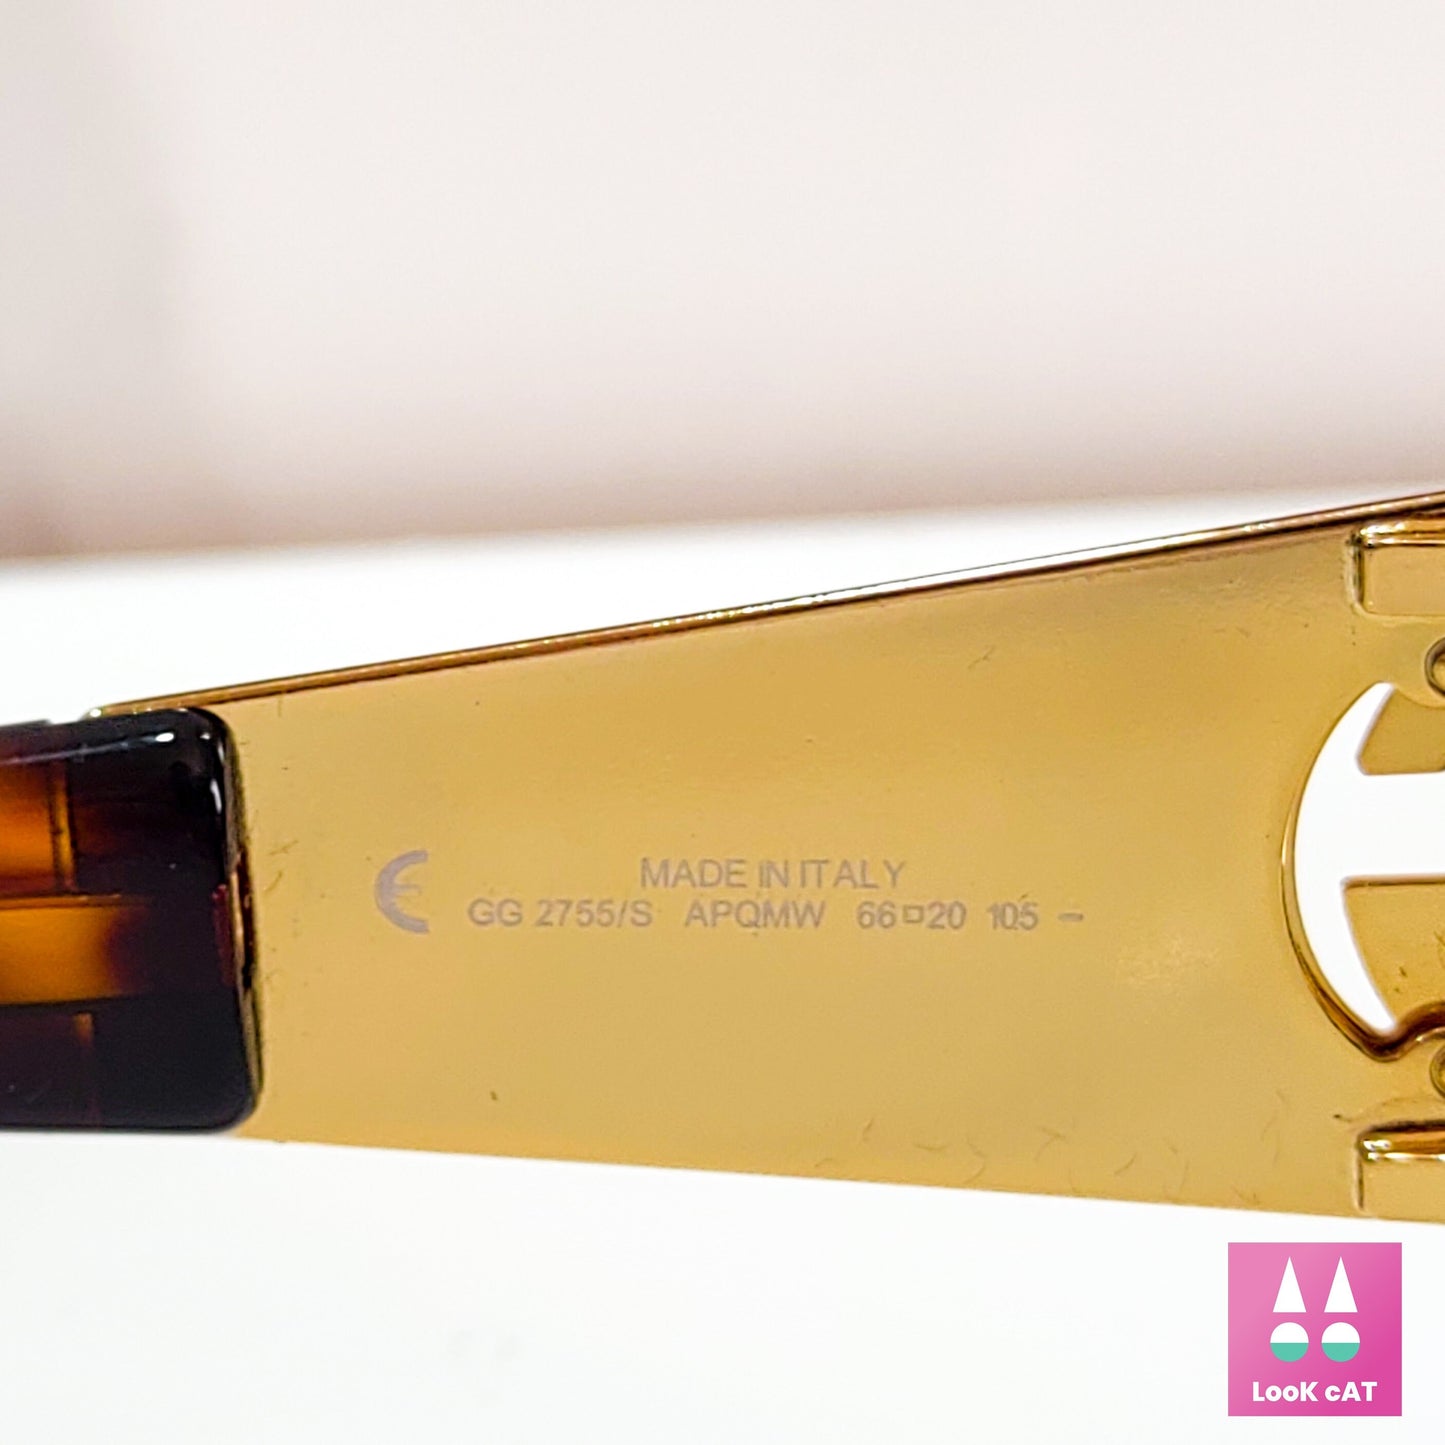 Gucci 2755 occhiali da sole vintage oro wrap shield NOS occhiali lunetta brille y2k anni '90